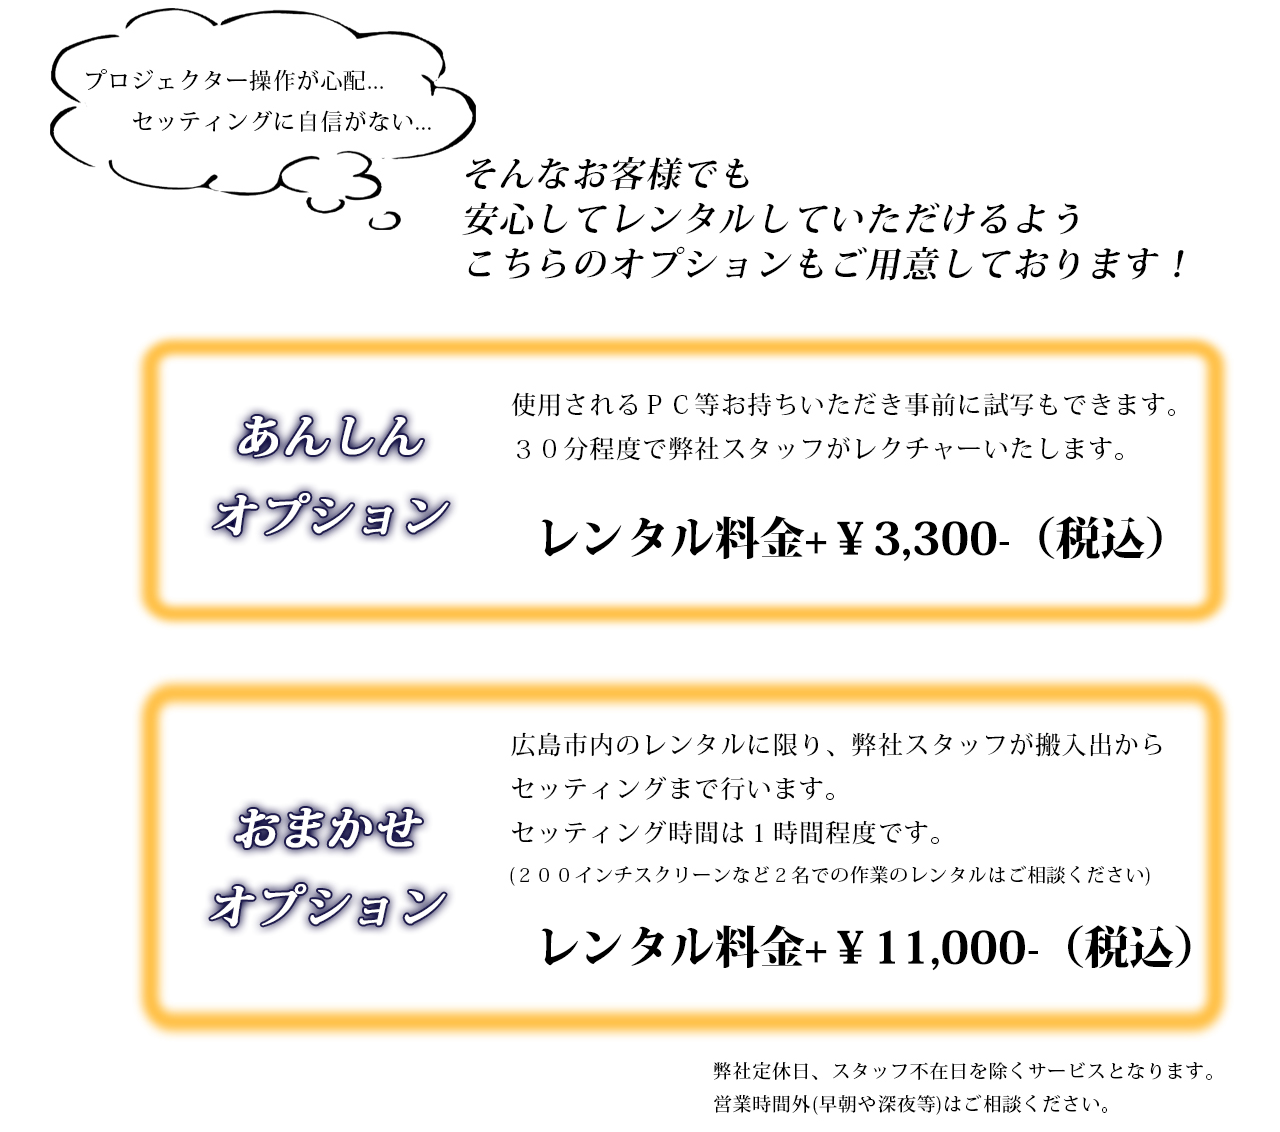 安心オプション　事前試写できます！レンタル料金+￥3,000。 おまかせオプション　広島市内限定、レンタル料金+￥10,000でセッティングいたします。